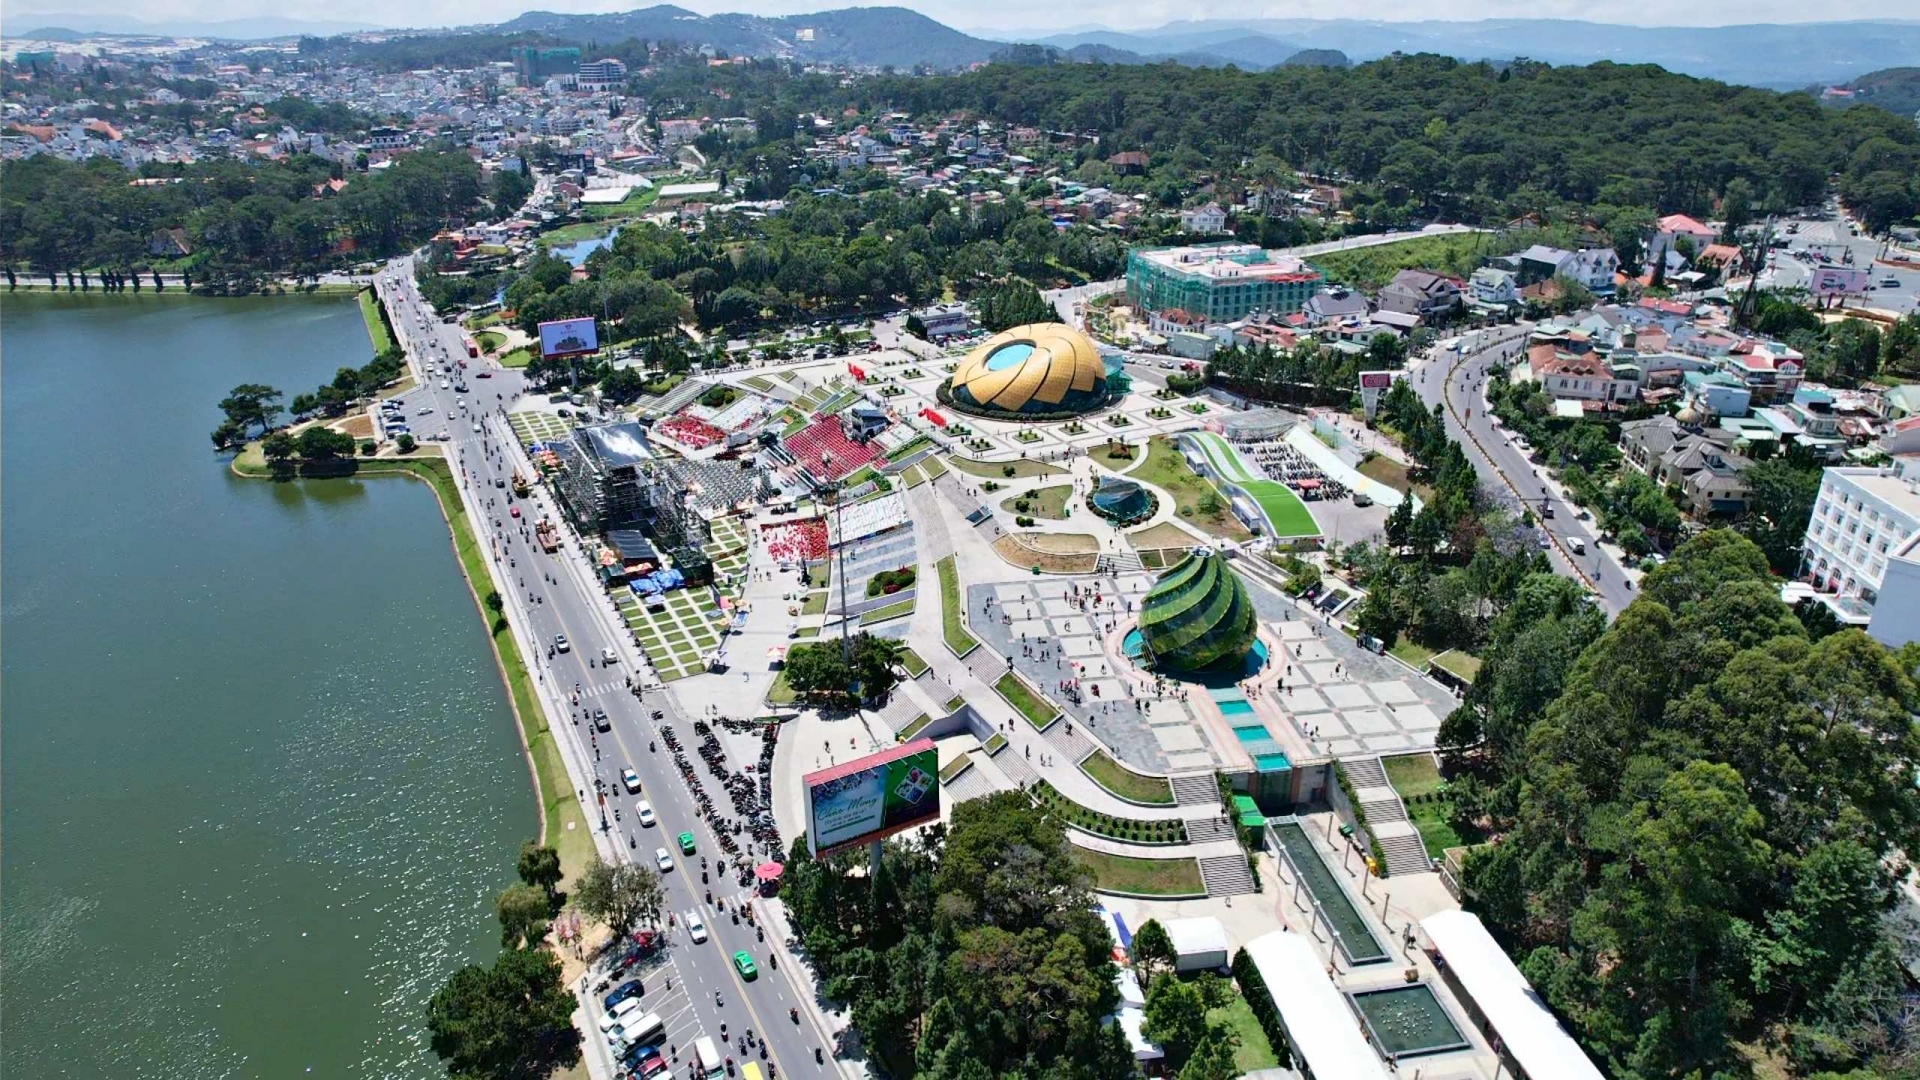 Khẩn trương hoàn thiện hồ sơ Quy hoạch tỉnh Lâm Đồng thời kỳ 2021-2030, tầm nhìn đến năm 2050